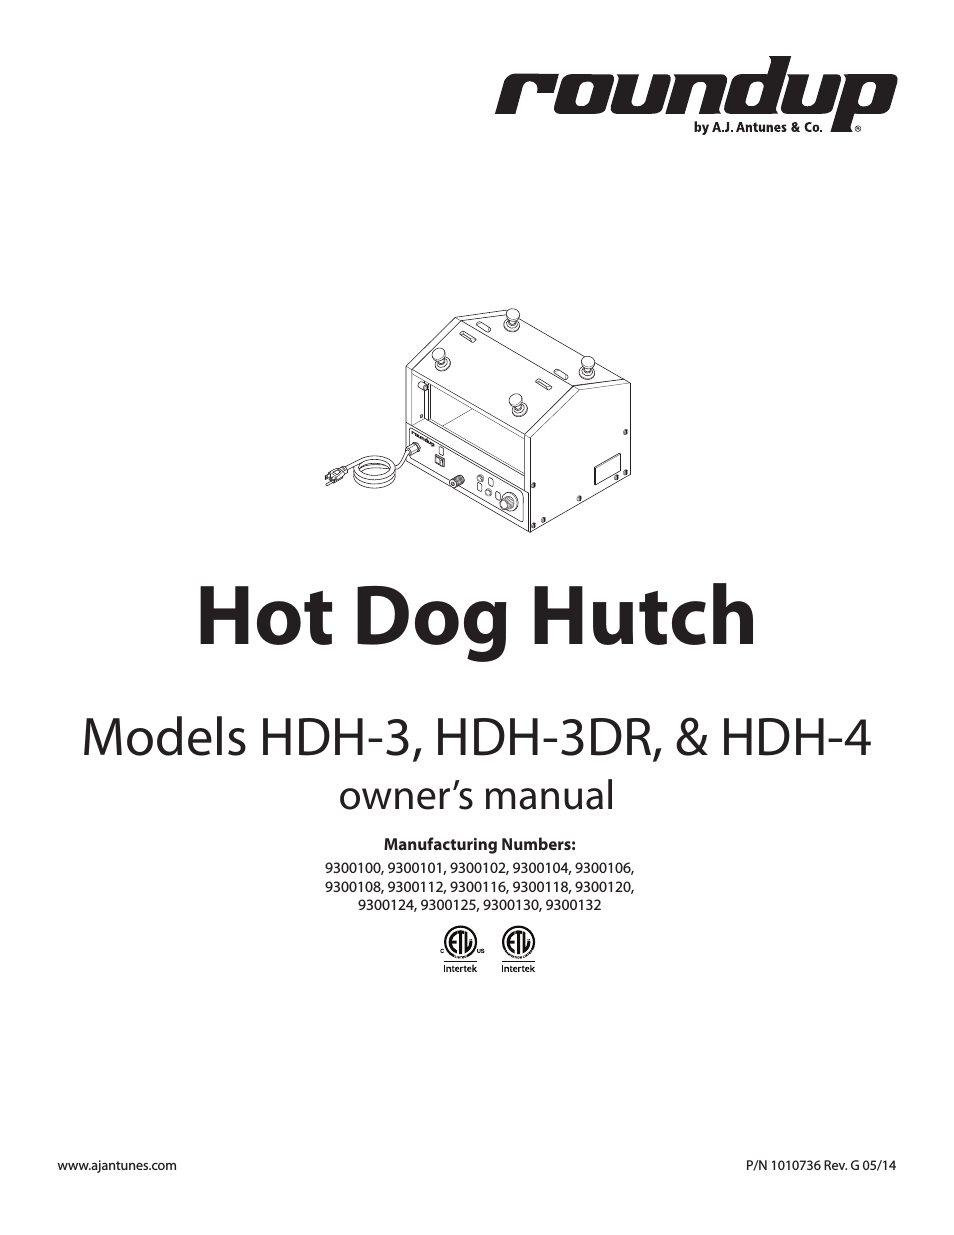 HDH-3 9300116